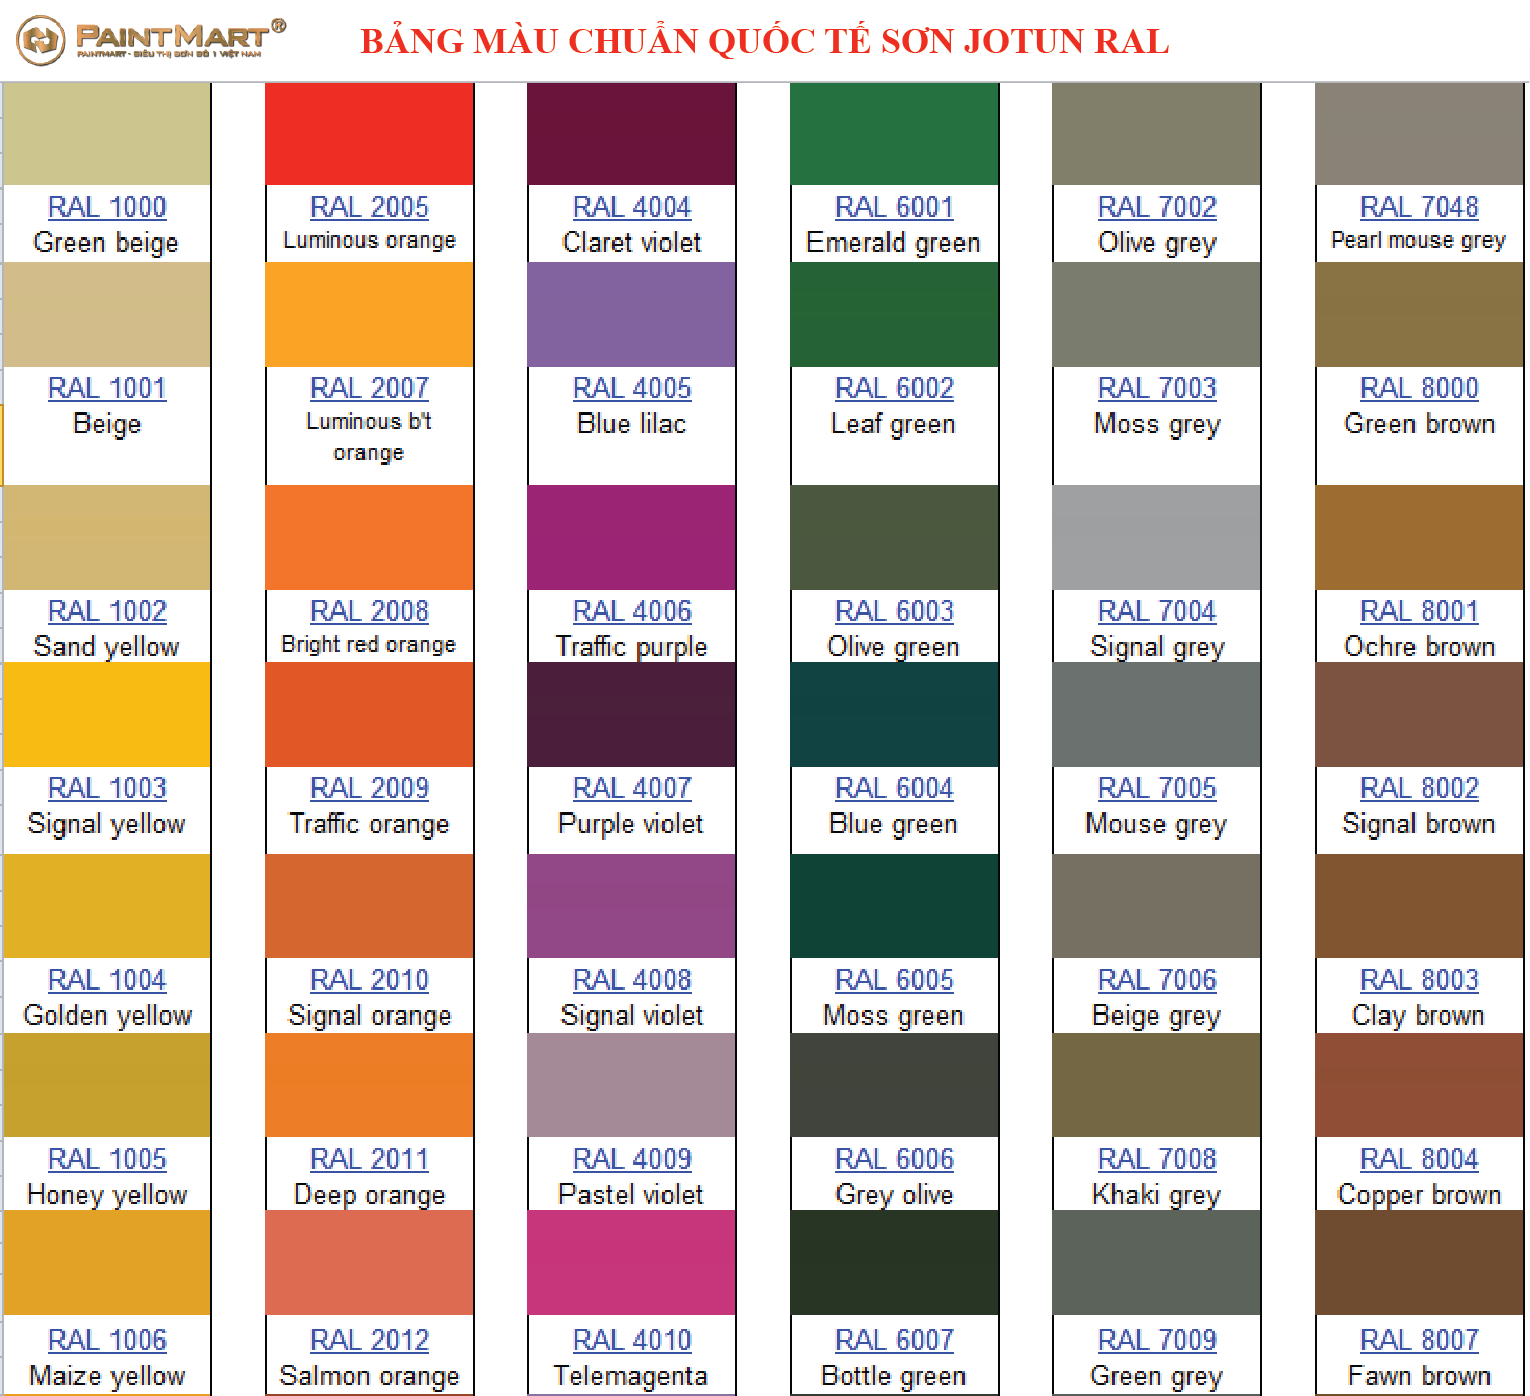 Jotun Ral: Bảng màu Jotun Ral với hơn 2000 màu sắc khác nhau giúp bạn dễ dàng tìm kiếm màu ưng ý cho công trình của mình. Bên cạnh đó, Jotun Ral còn đảm bảo độ bền cao và chống tia UV tuyệt đối cho tường nhà của bạn. Hãy xem hình ảnh liên quan để chọn lựa màu sắc phù hợp nhất!